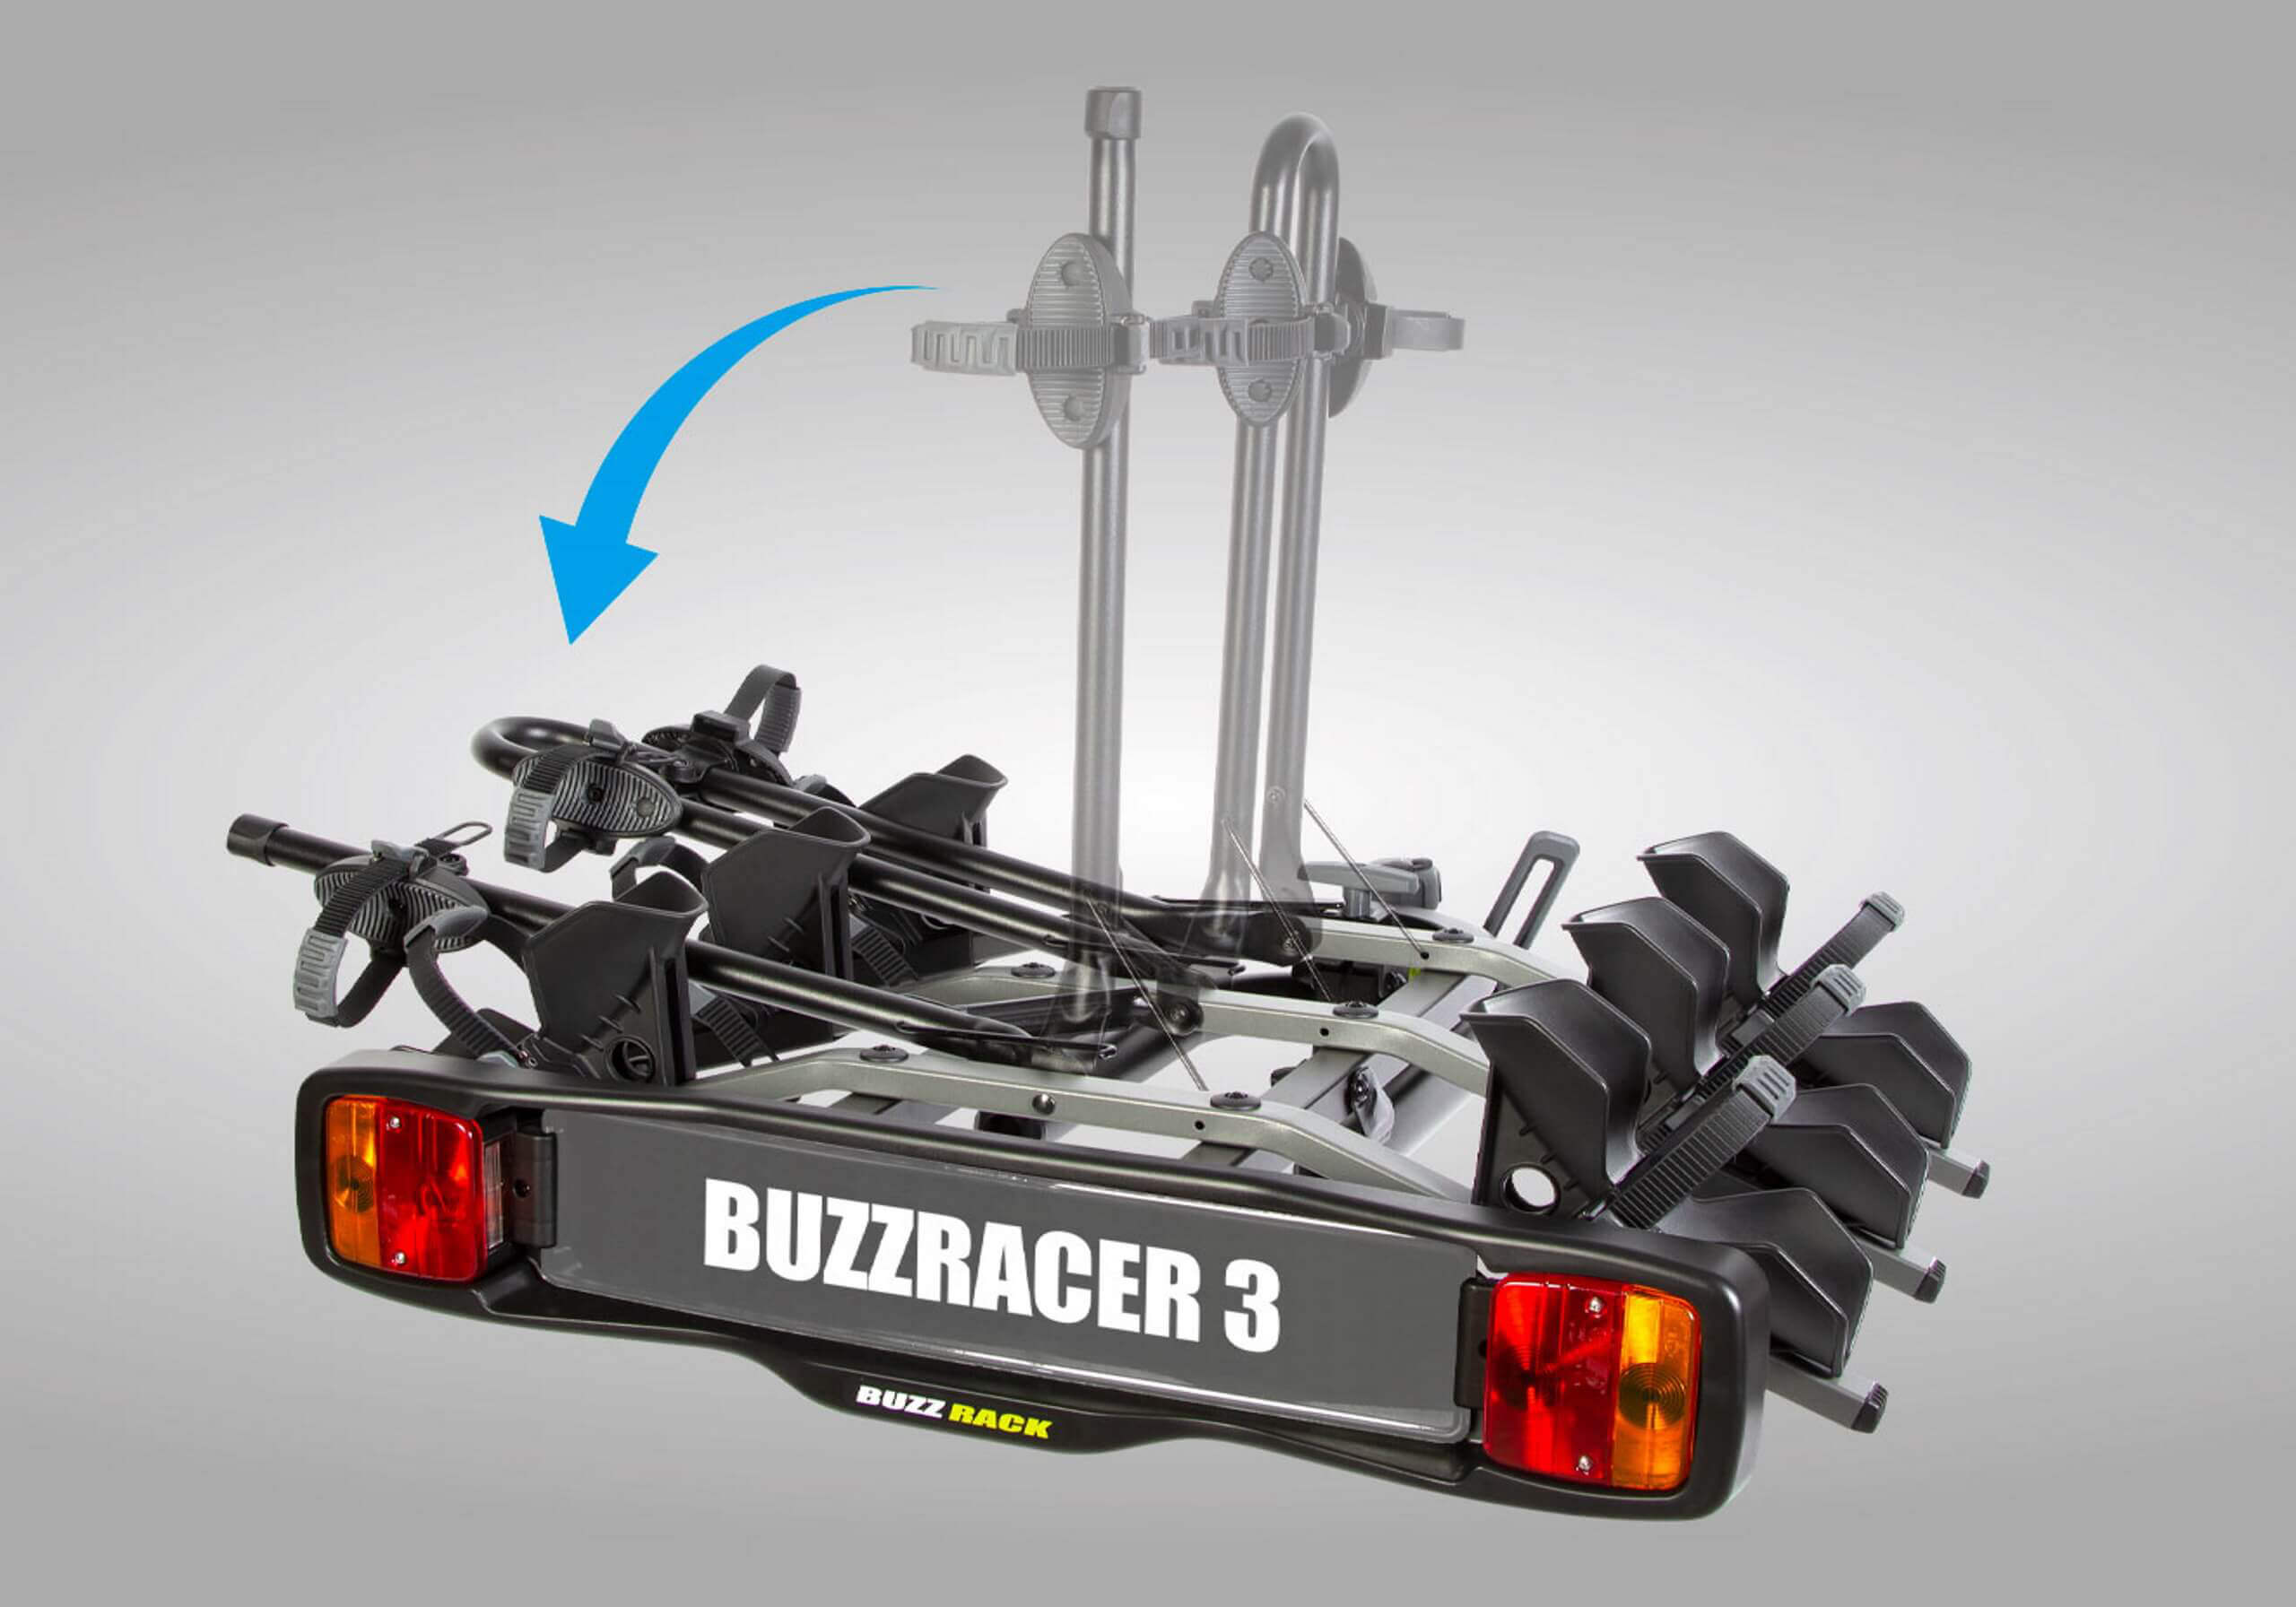 BUZZ RACK BuzzRacer 3 - 3 bike wheel support rack no. BRP333